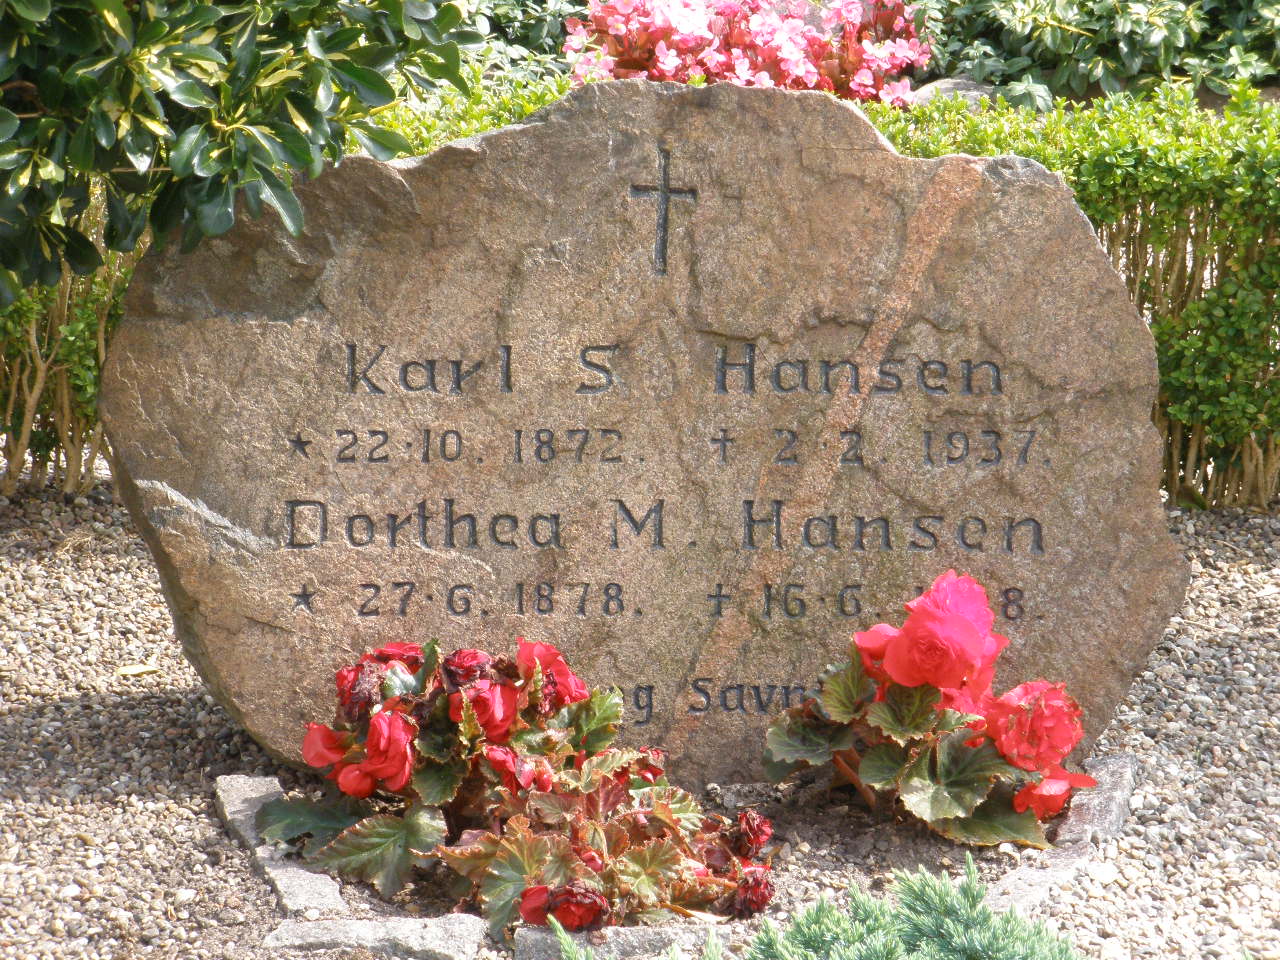 Karl S. Hansen.JPG